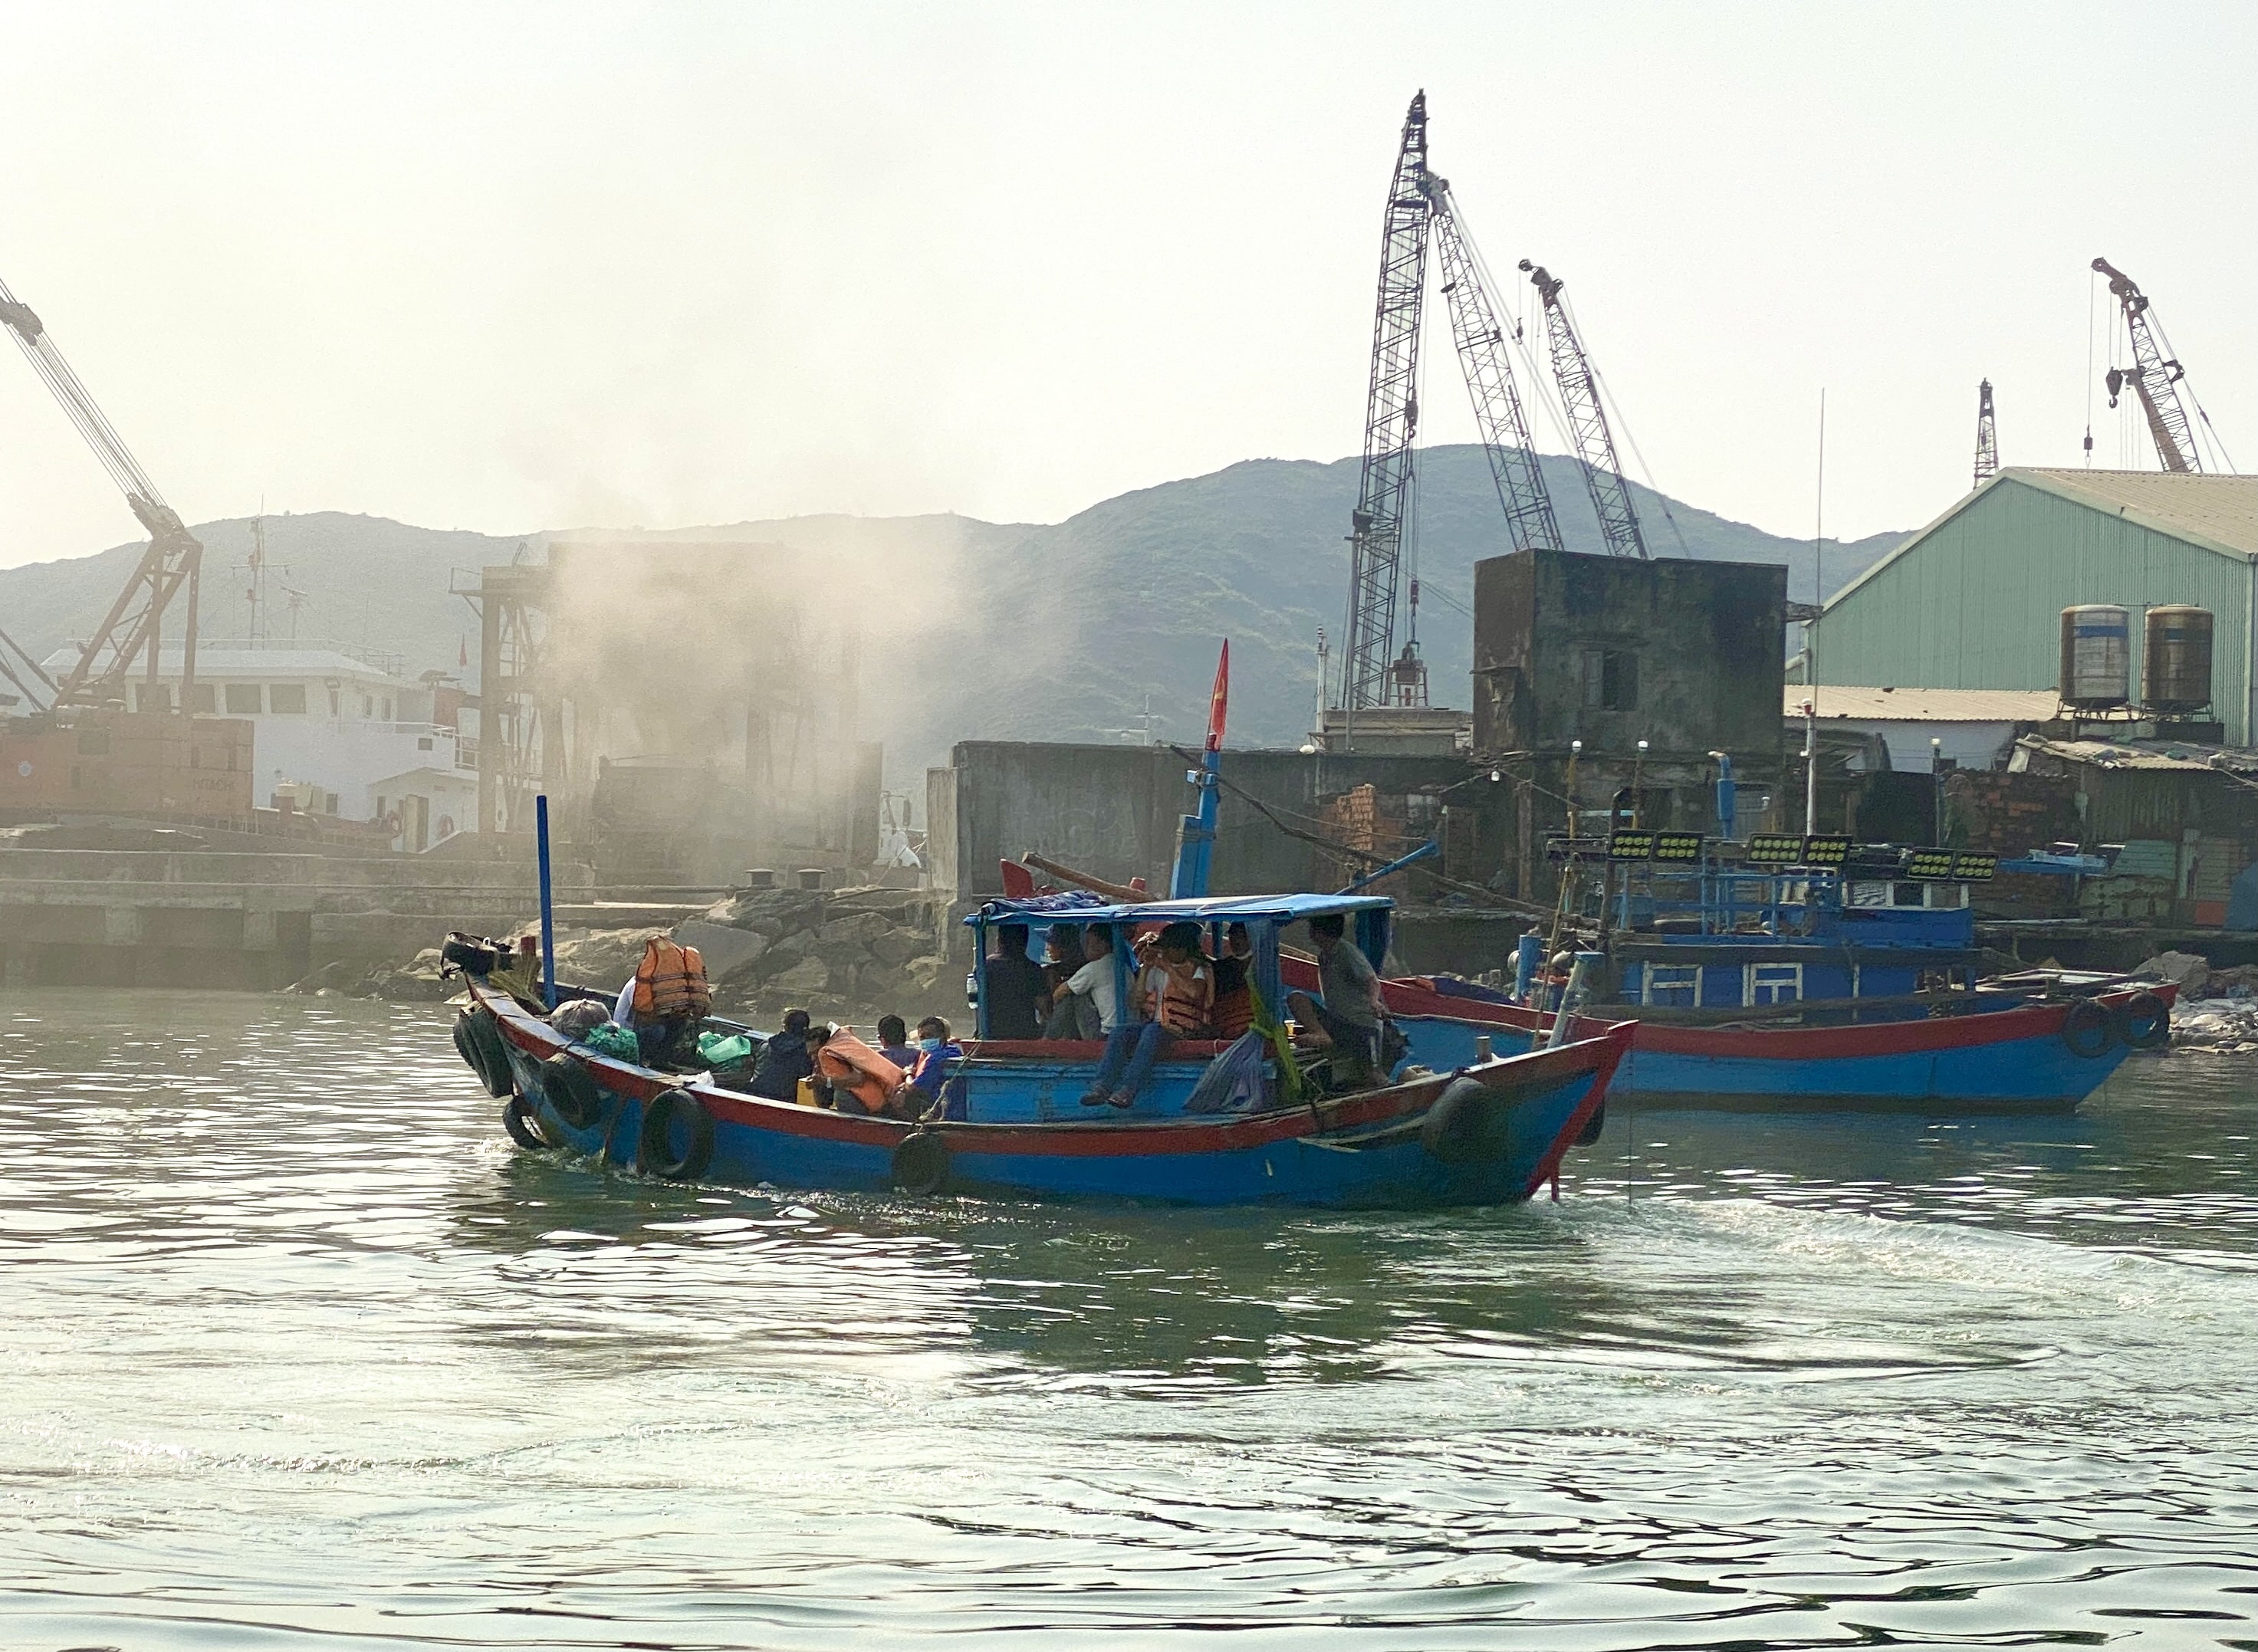 Bình Định: Cấm tàu chưa đăng kiểm hoạt động, hàng ngàn người dân gặp khó